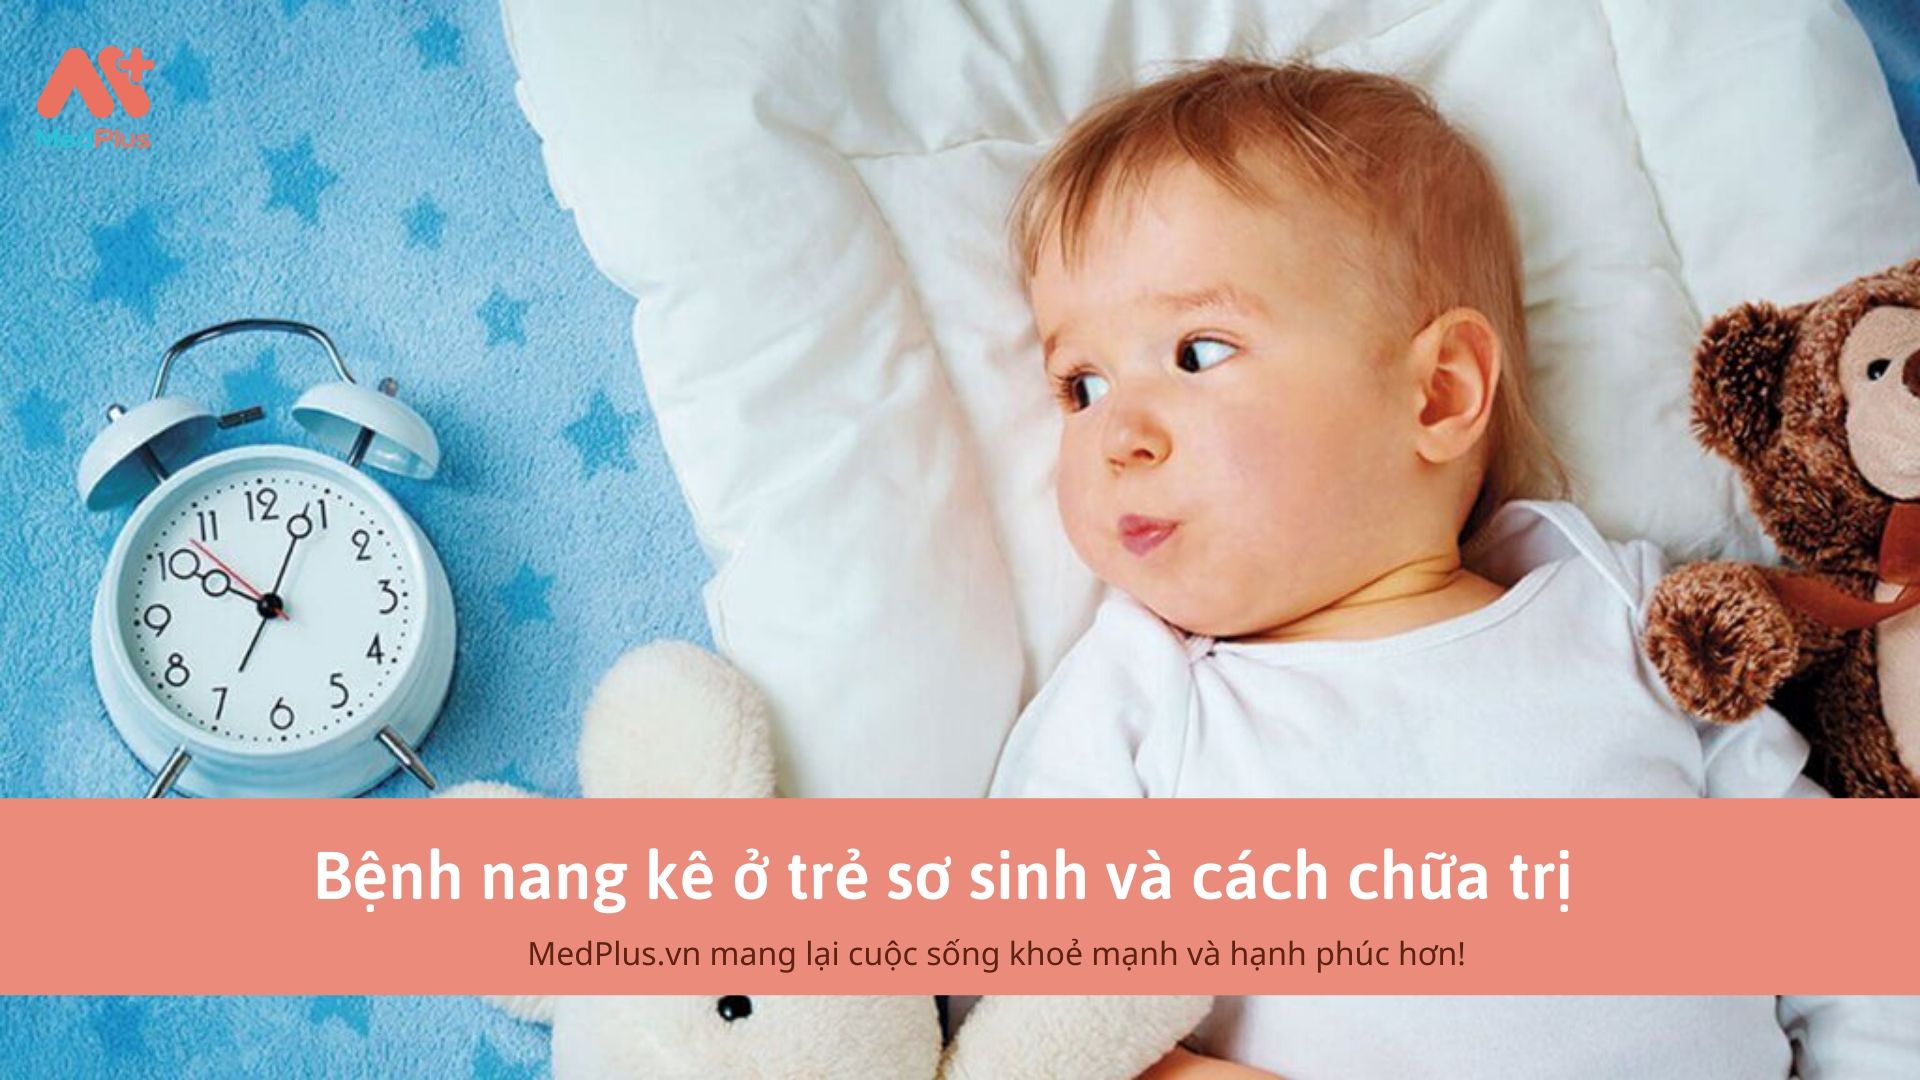 Bệnh nang kê ở trẻ sơ sinh và cách chữa trị